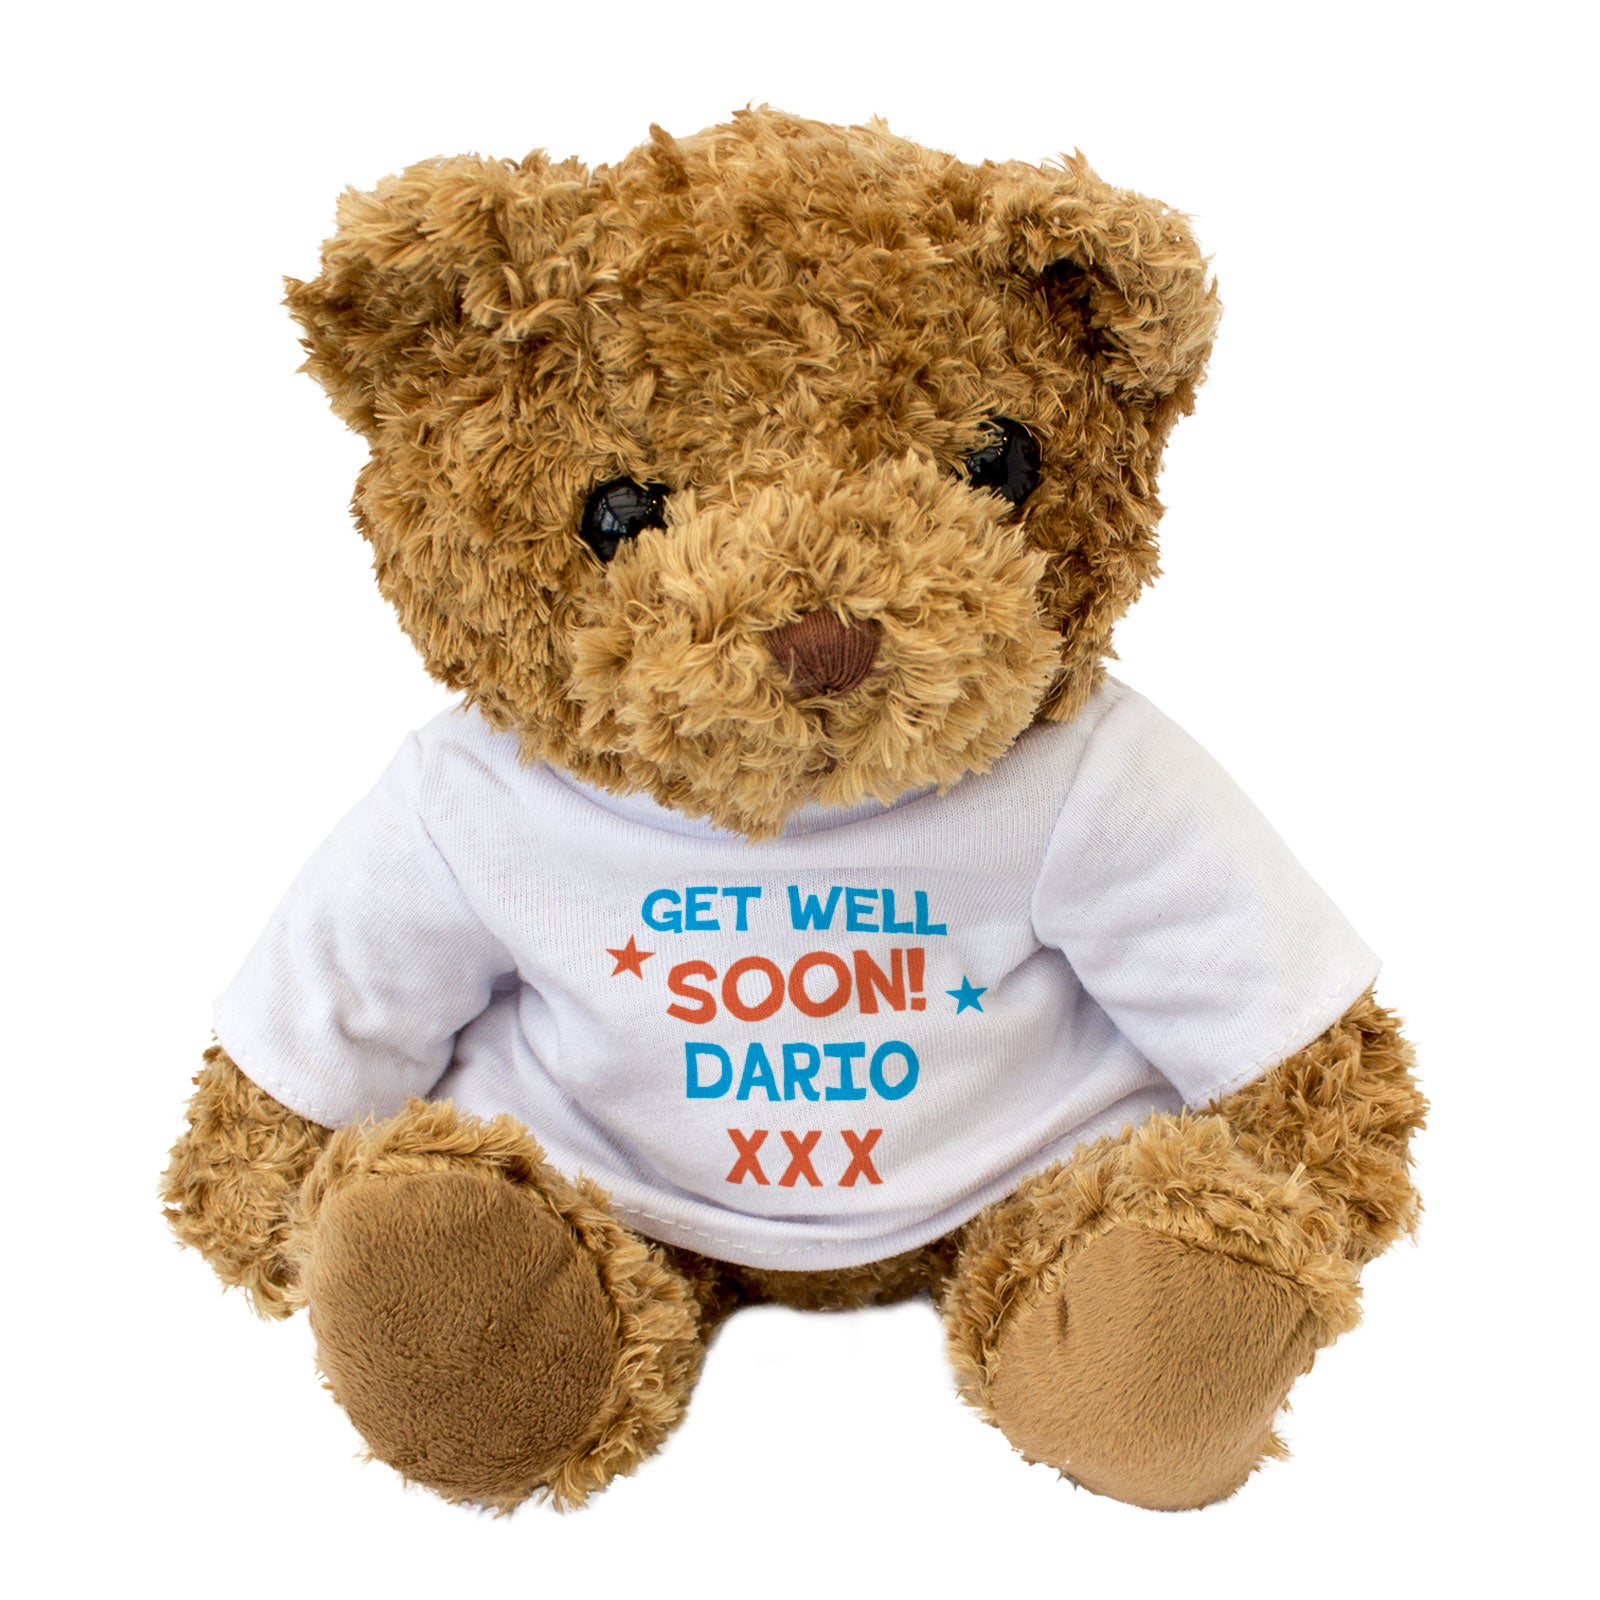 Get Well Soon Dario - Teddy Bear